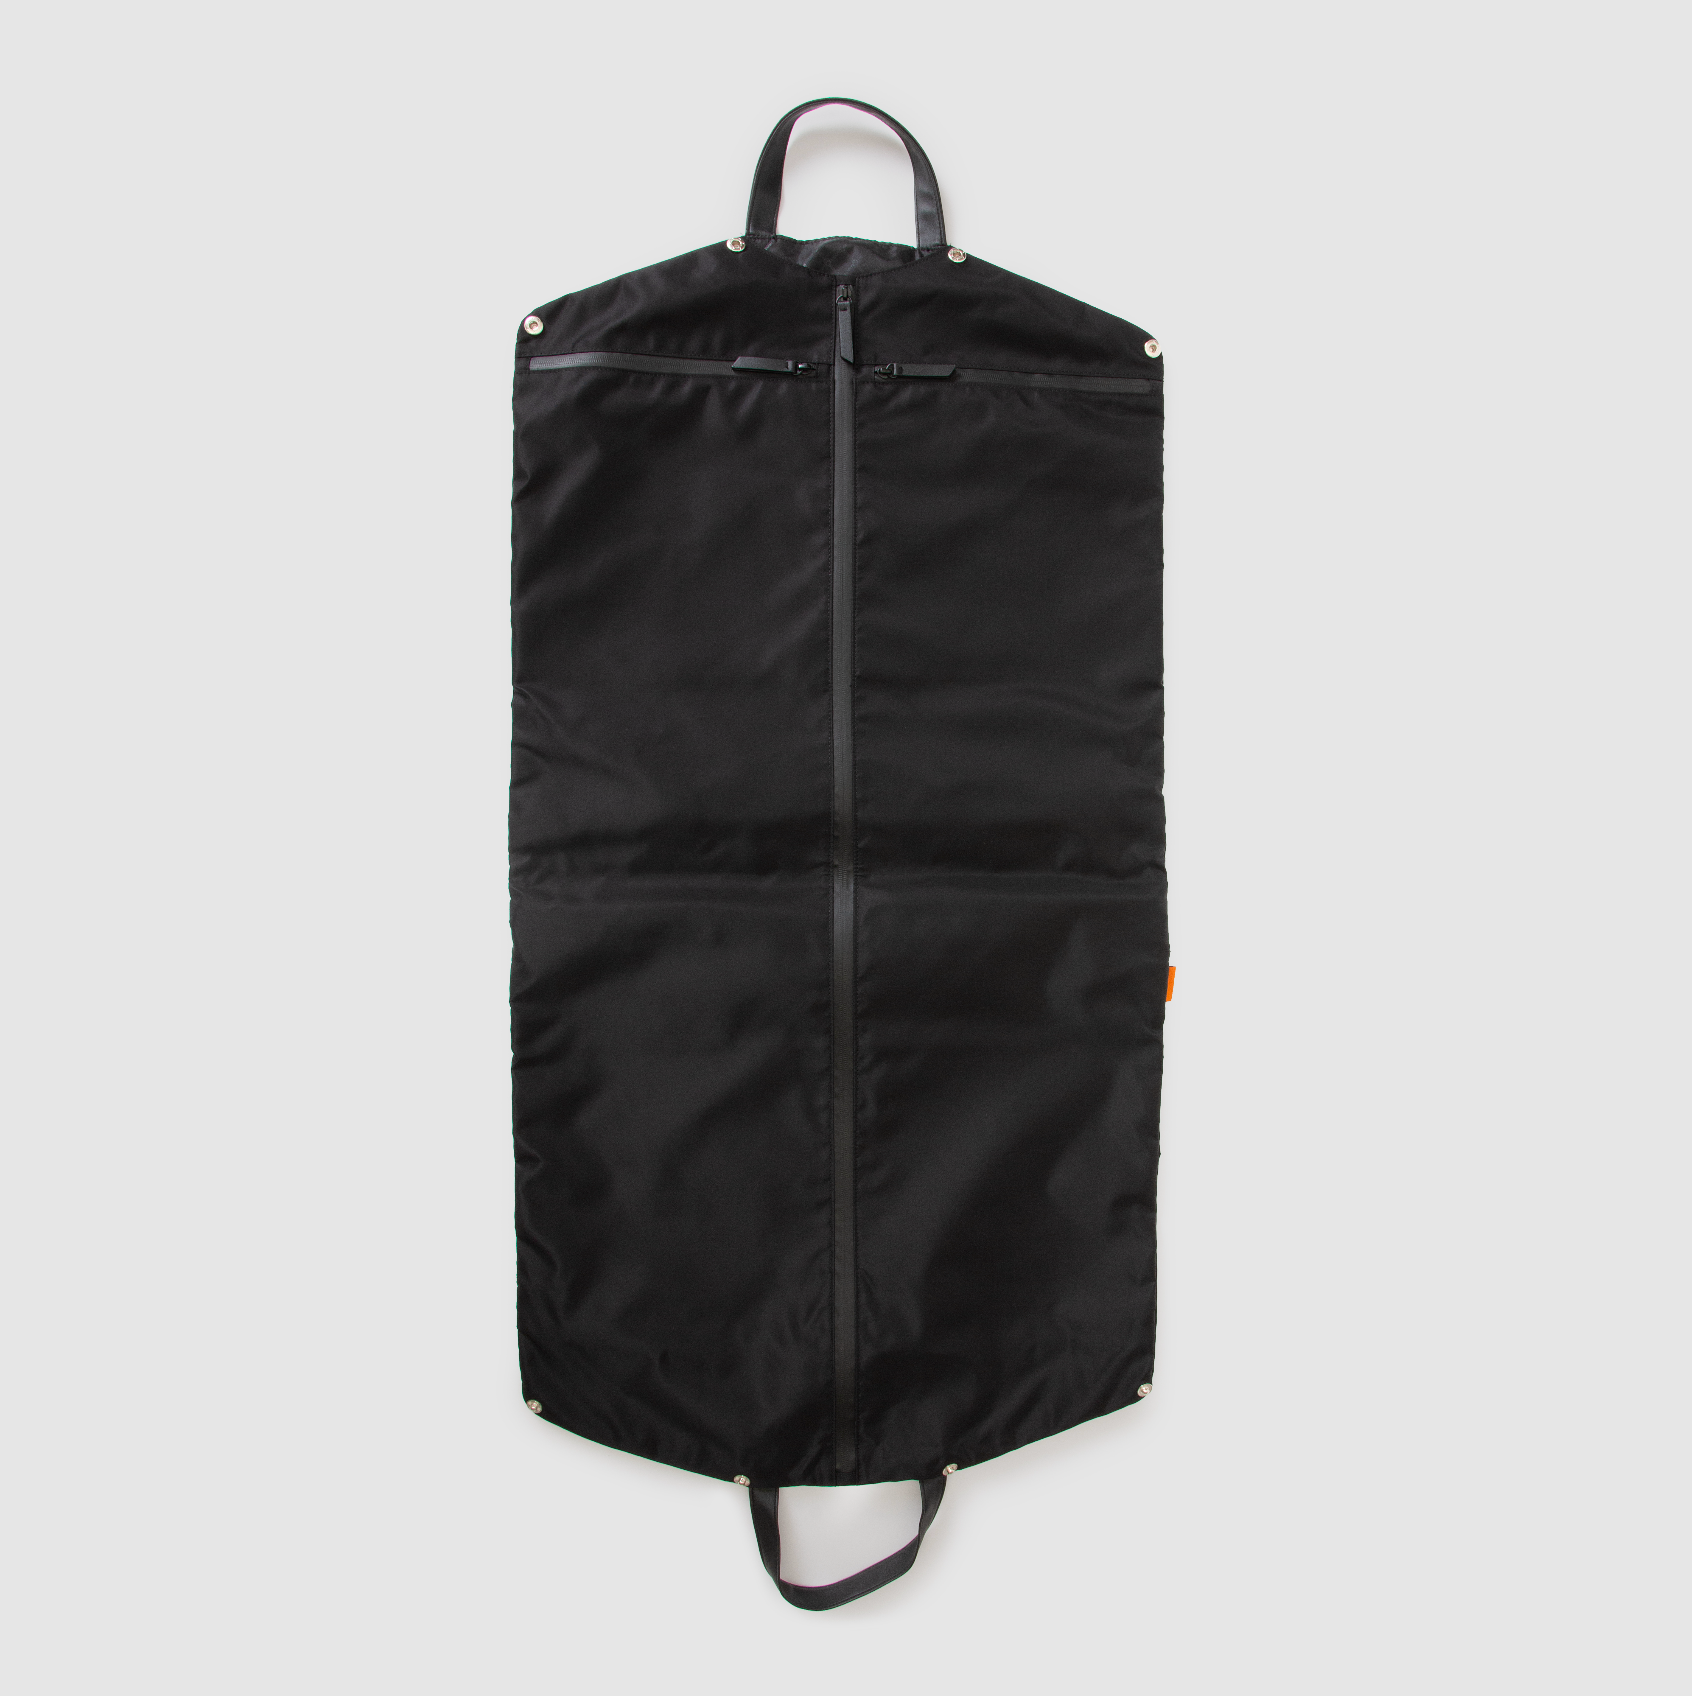 Voyager Garment Bag – Globite